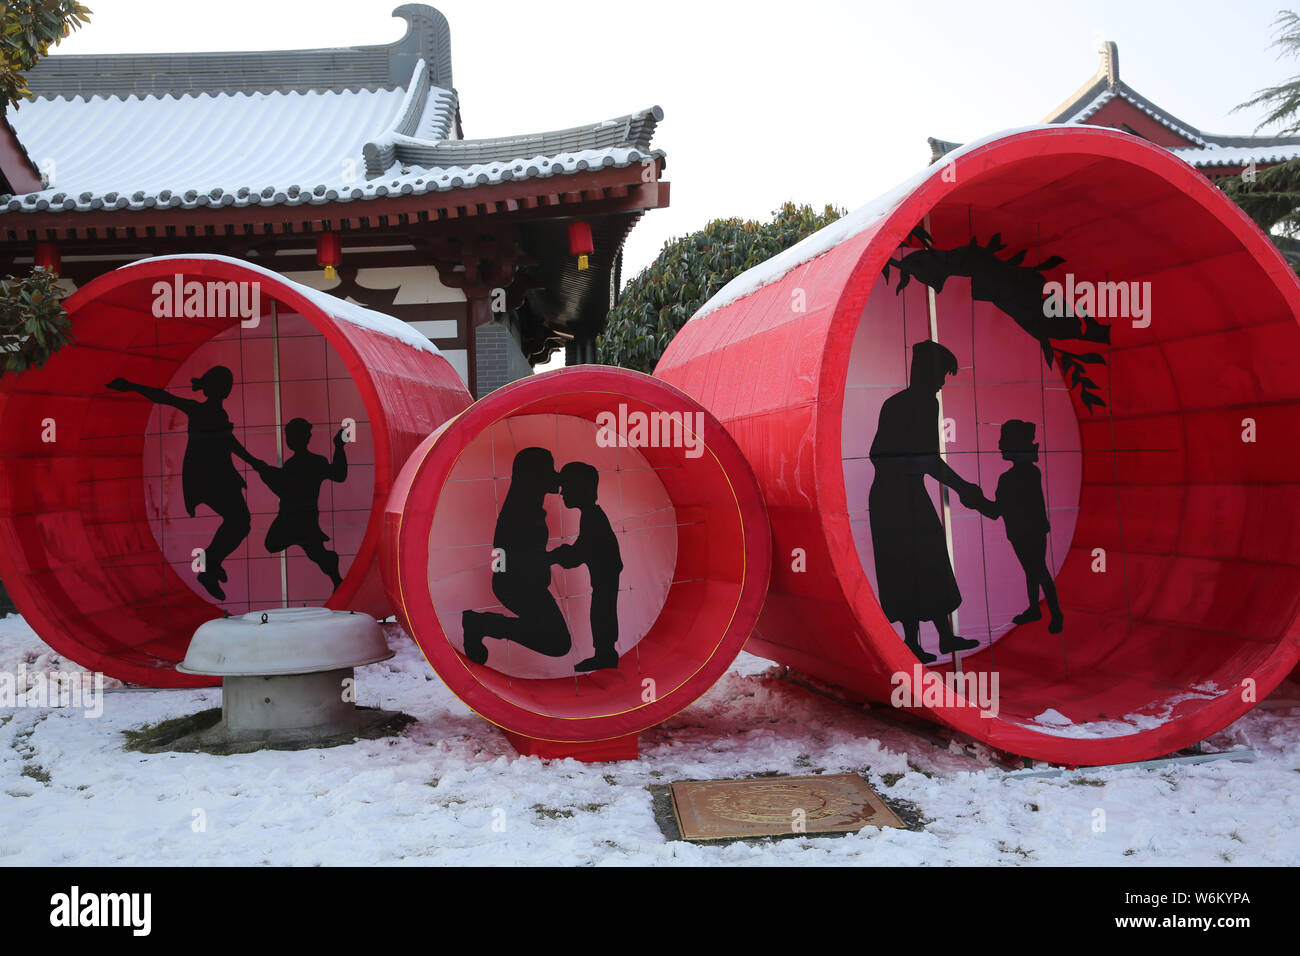 Mutter und Kind - themed schattenhafte Gestalt Laternen werden auf der Anzeige für die kommende Laternenfest am Tang Paradies in der Stadt Xi'an im Nordwesten Chinas S Stockfoto